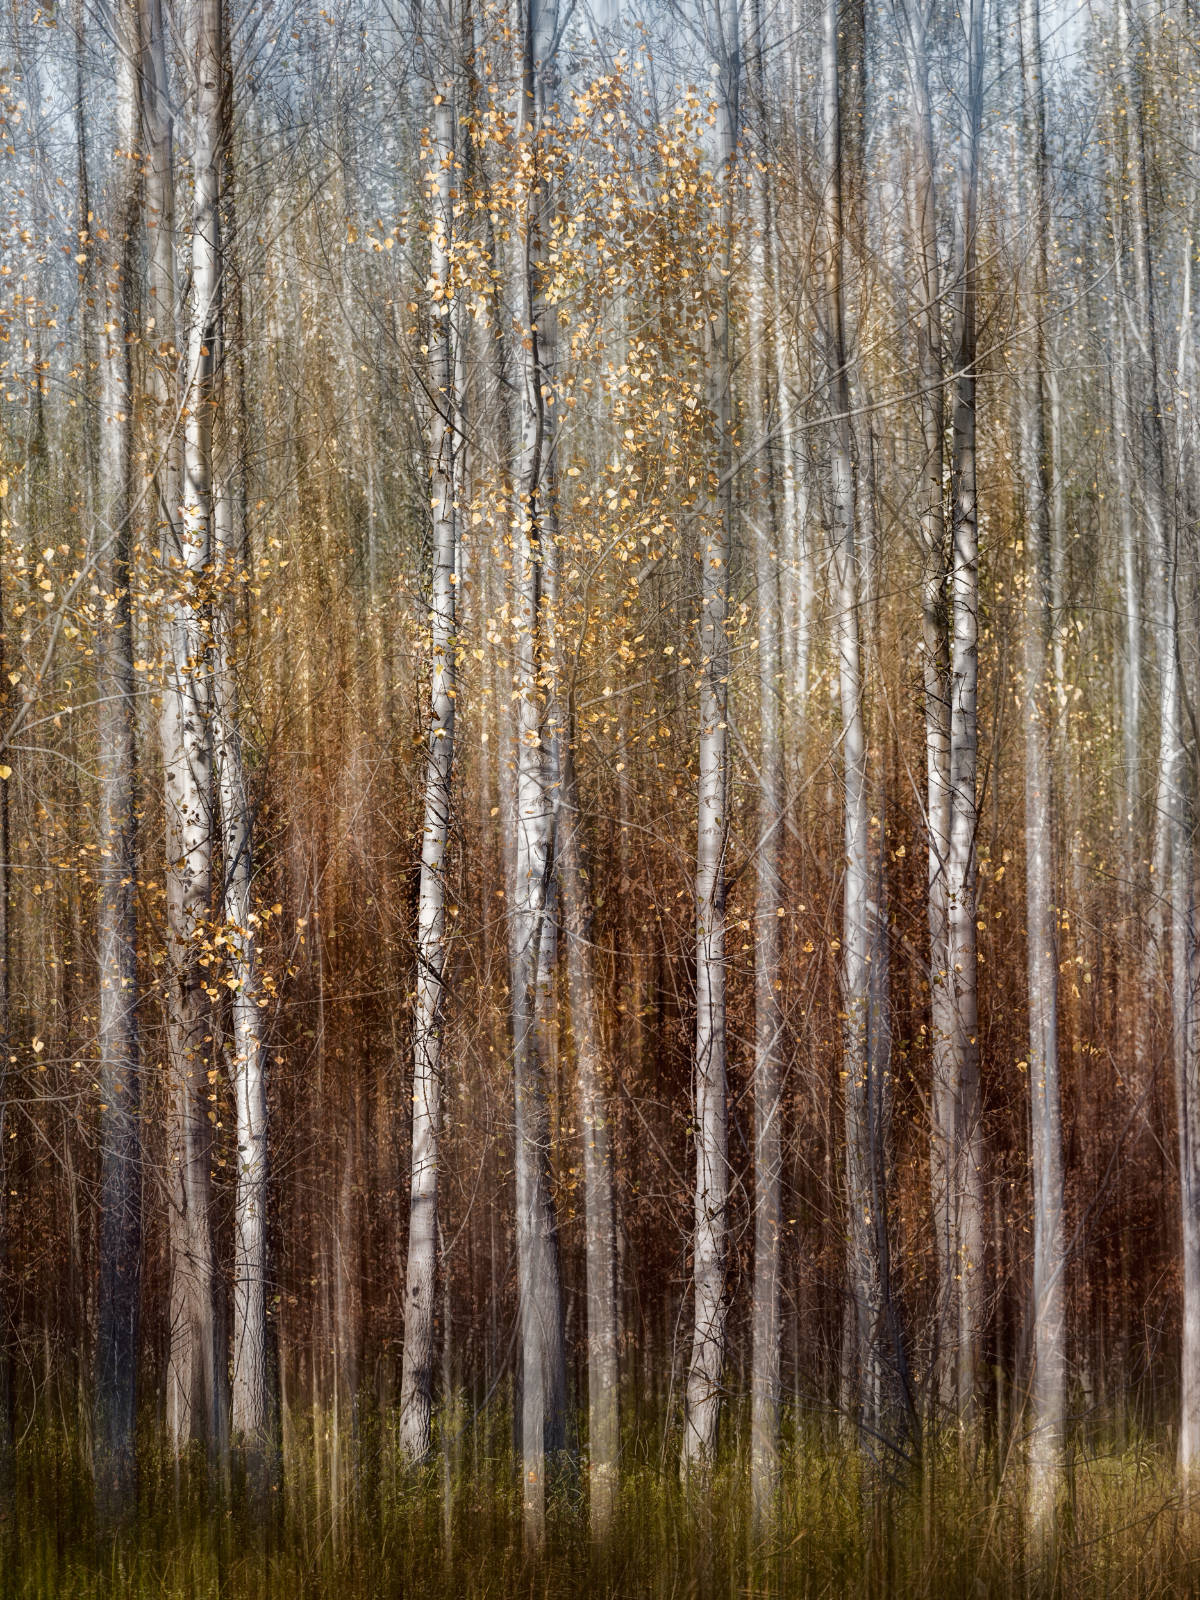 Impresszionista festmény szerű fotó az őszi erdőről.